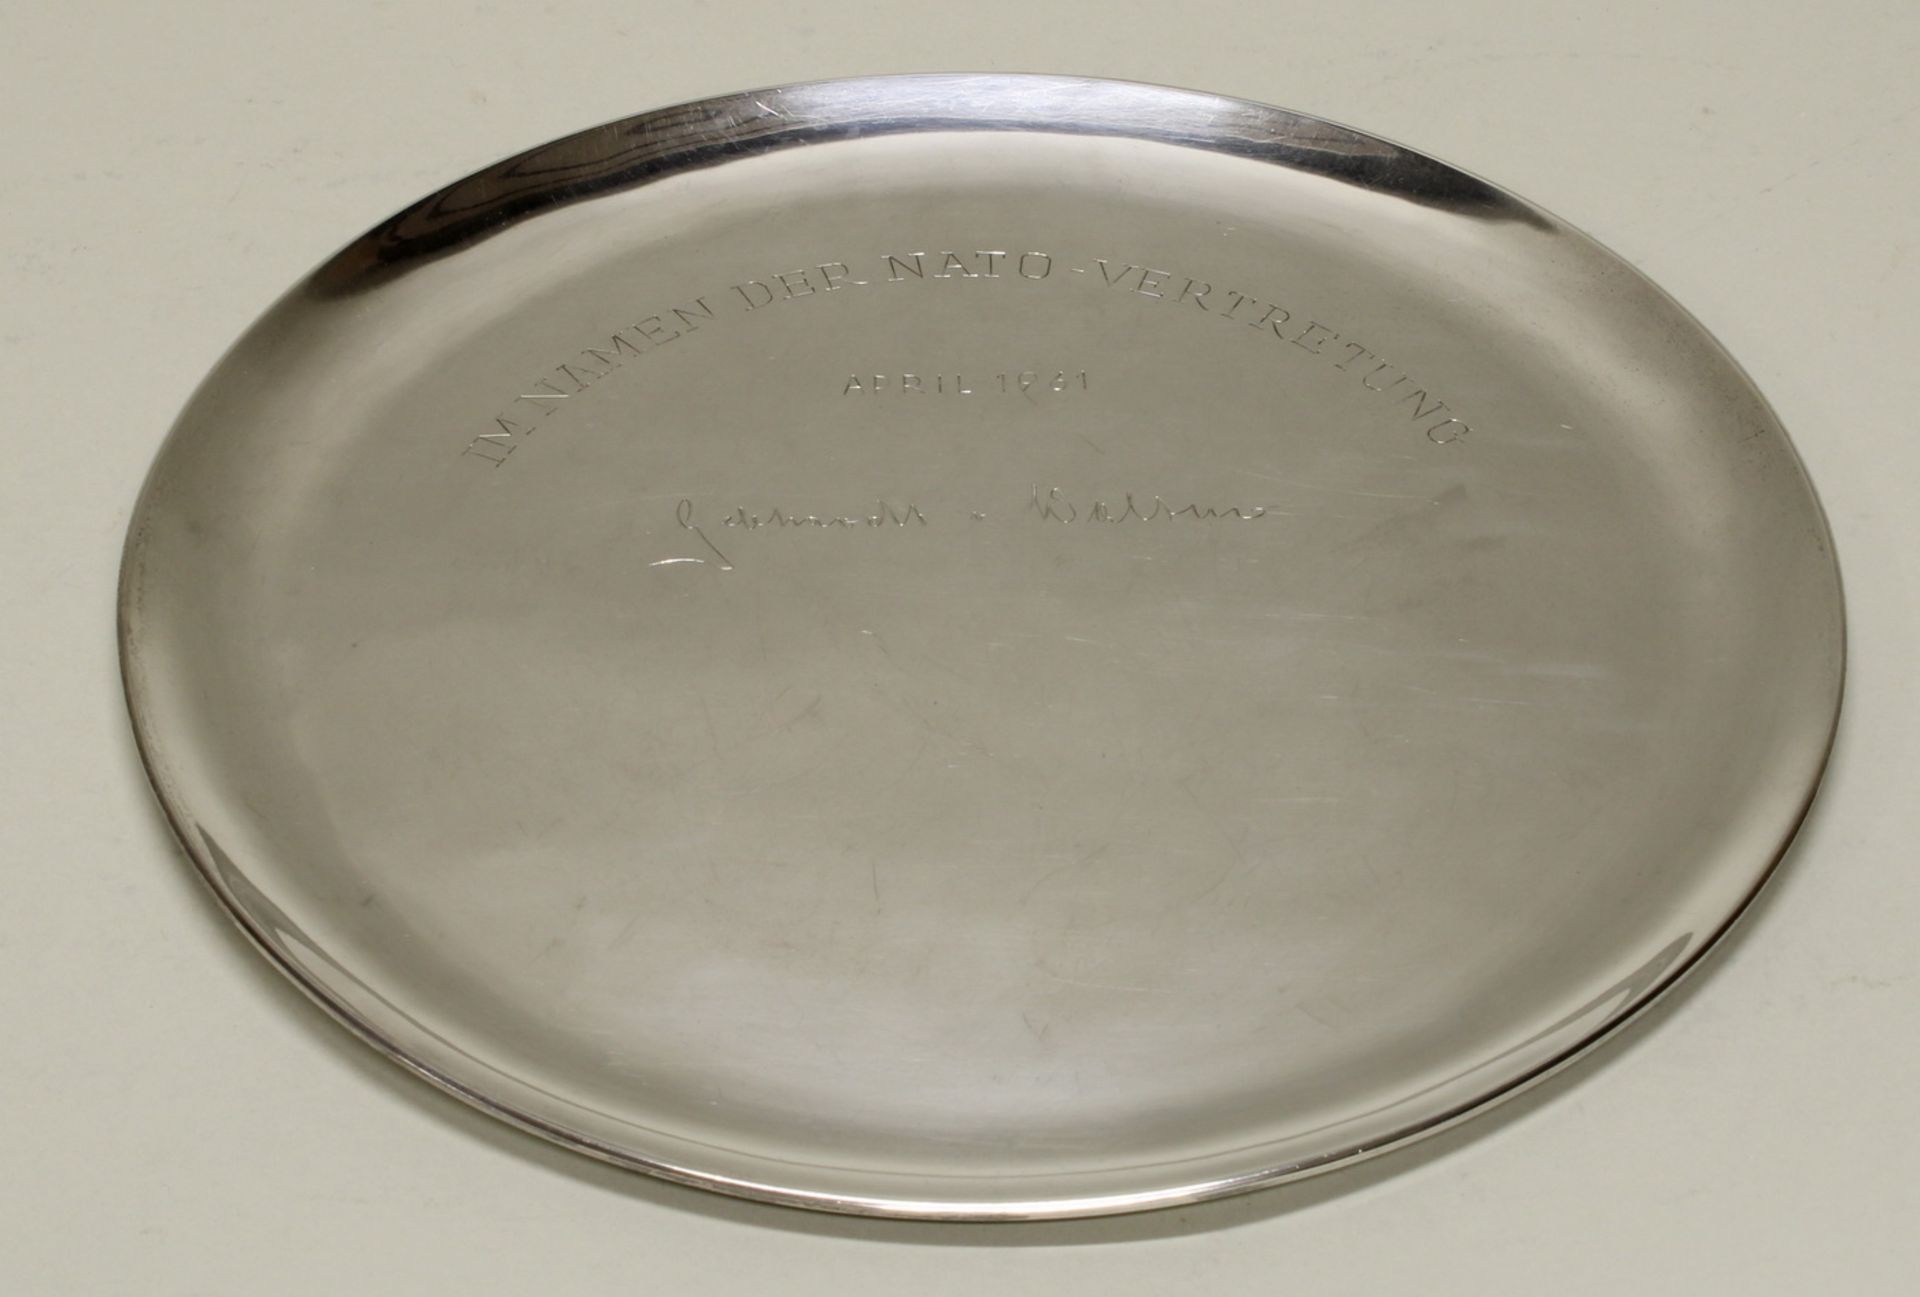 Platte, Silber 925, Mexiko, mit Widmungsgravur "Im Namen der Nato-Vertretung April 1961", ø 28 cm,